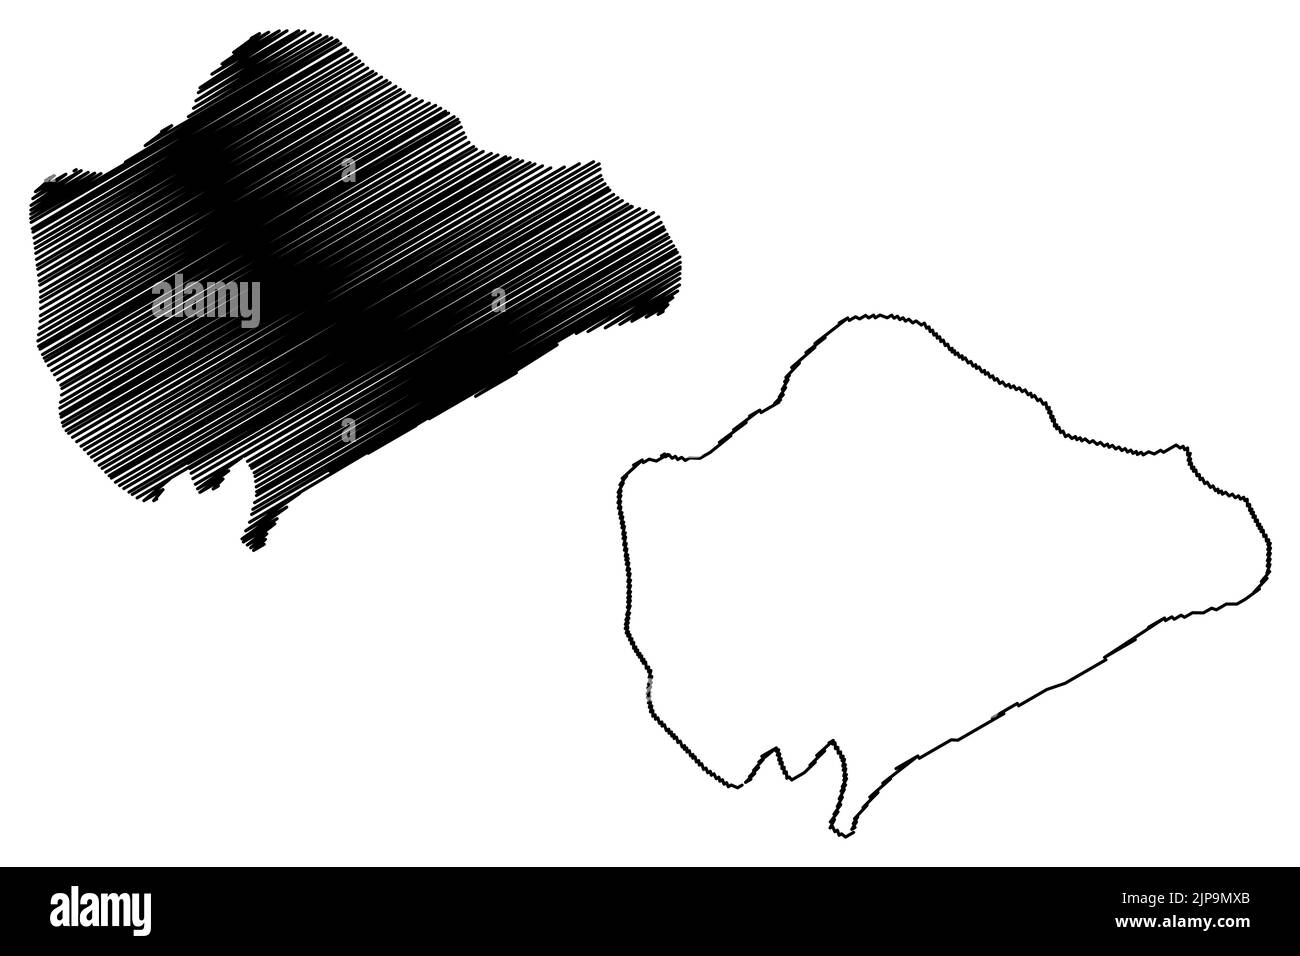 Île inaccessible (Royaume-Uni de Grande-Bretagne et d'Irlande du Nord, partie constituante de Sainte-Hélène, Ascension et Tristan da Cunha) carte vecto Illustration de Vecteur